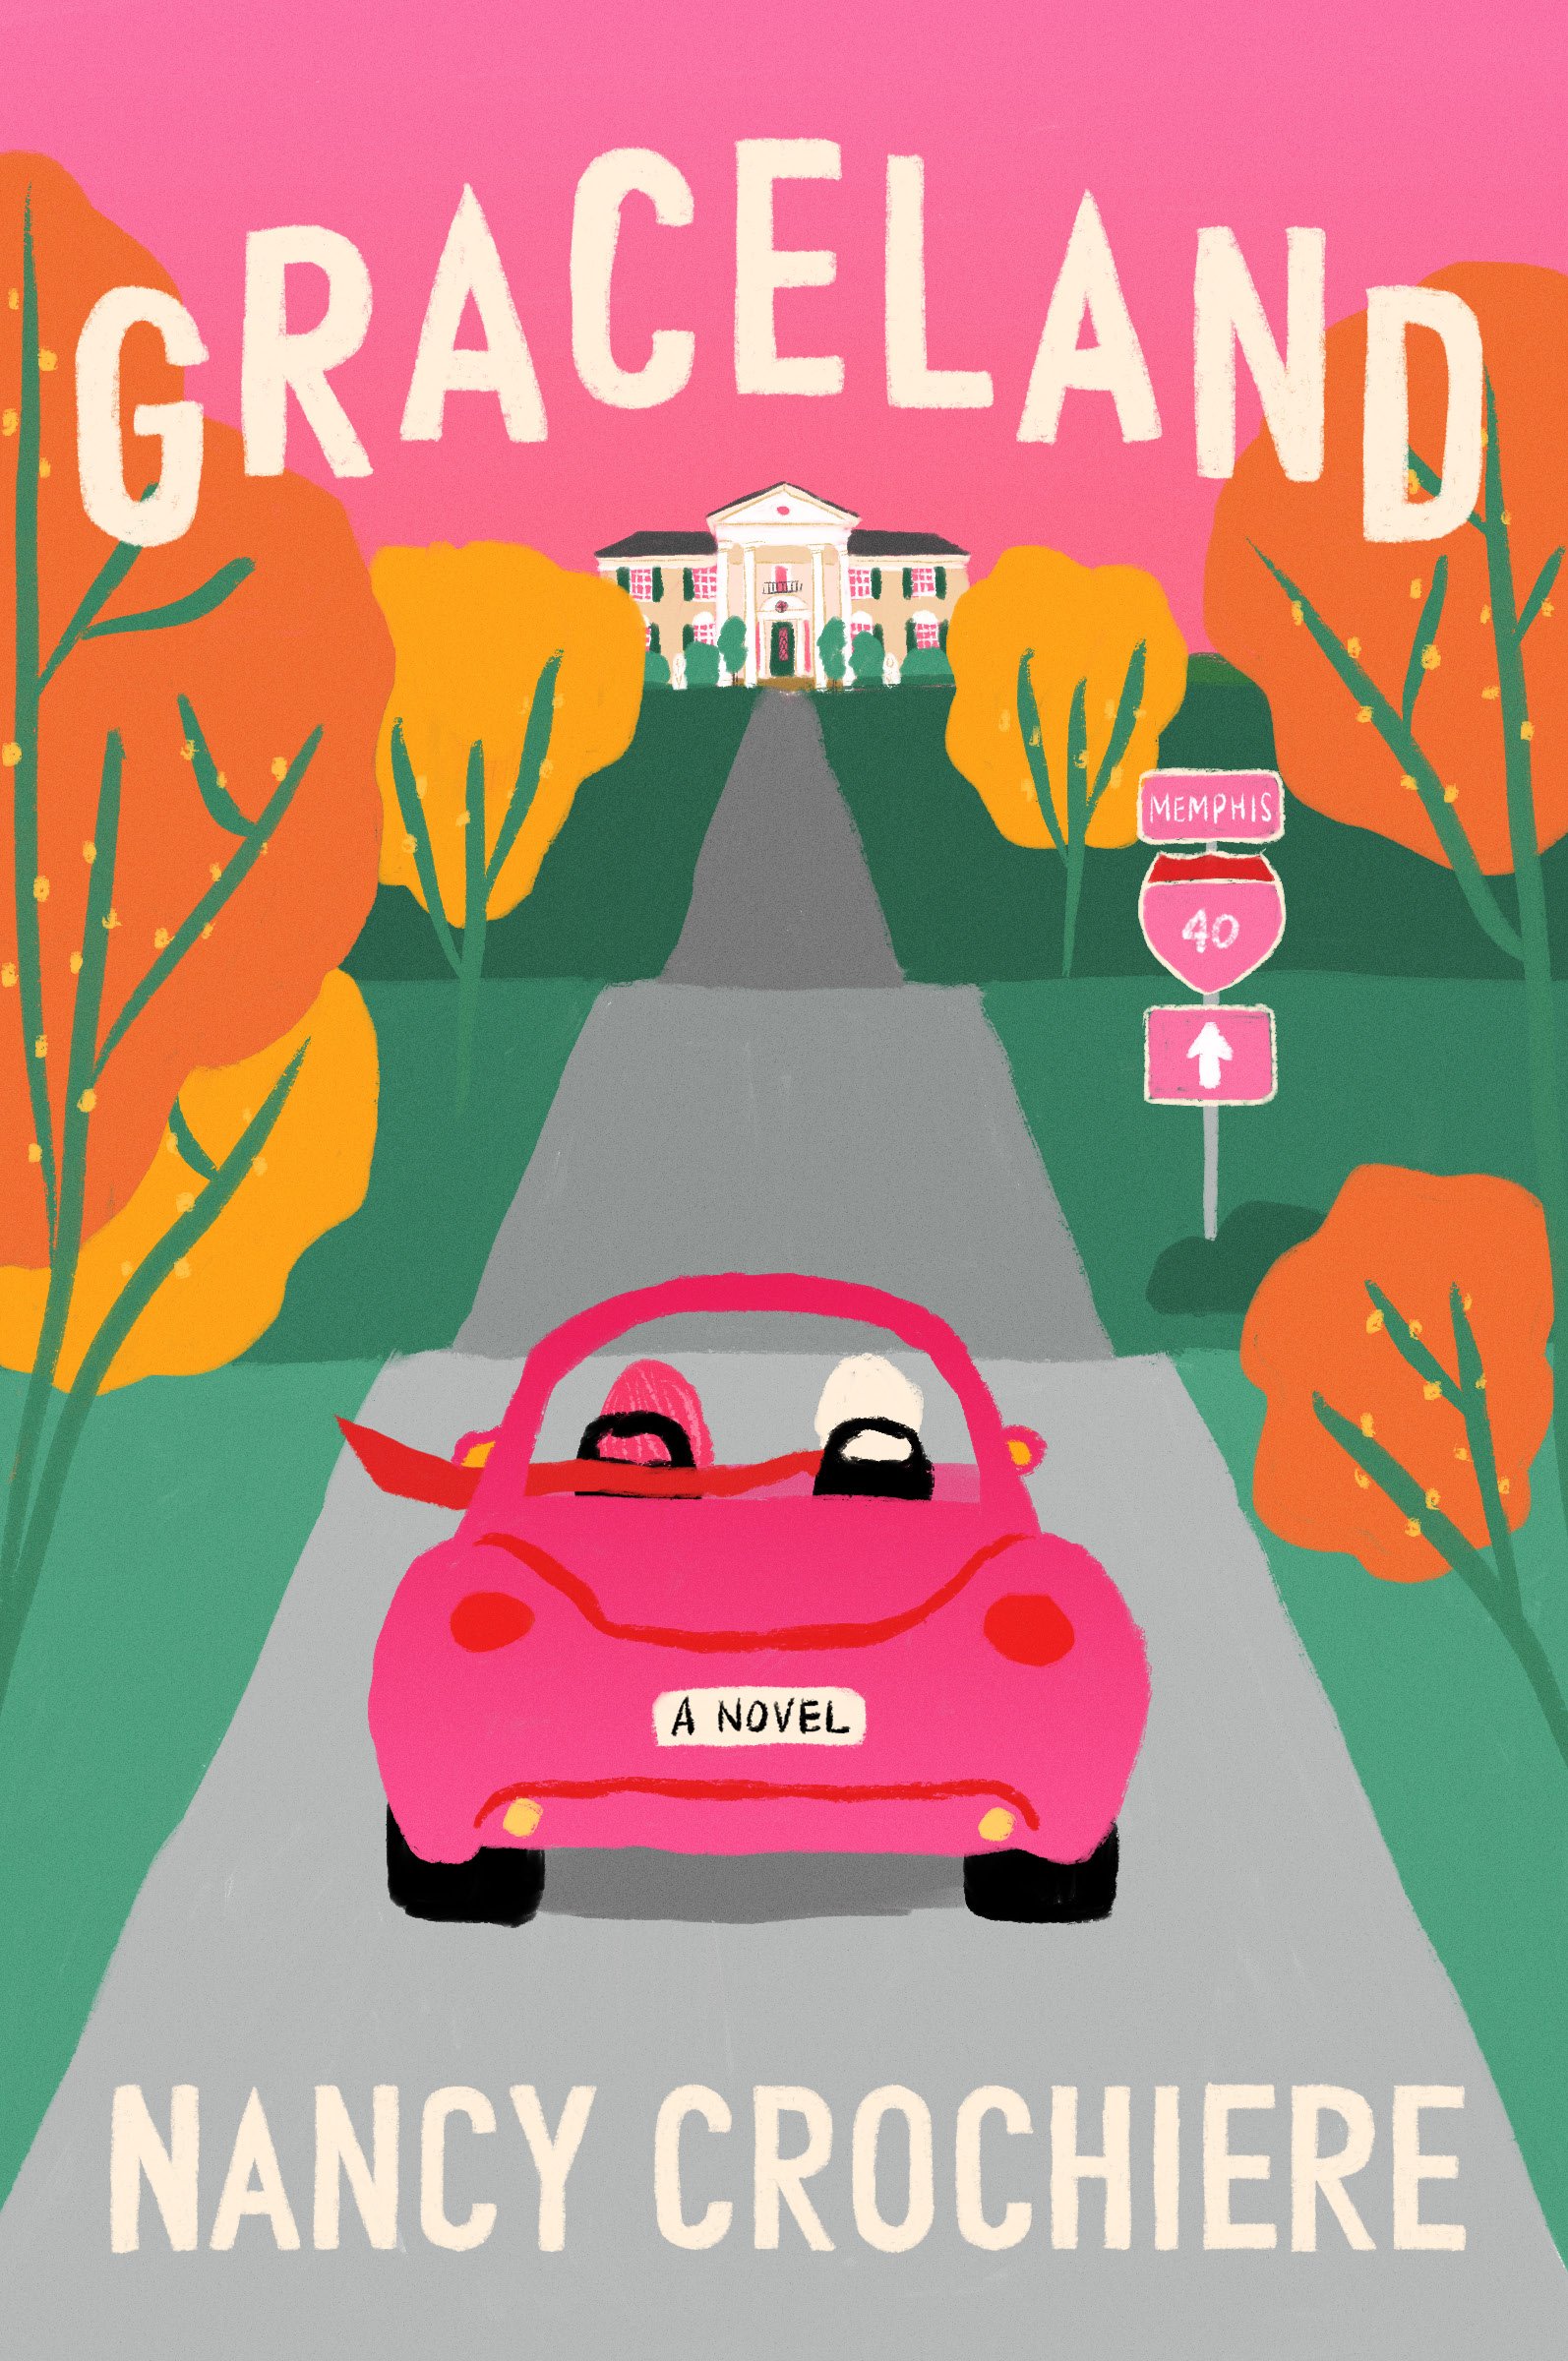 Crochiere, Nancy - Graceland - FINAL cover.jpg